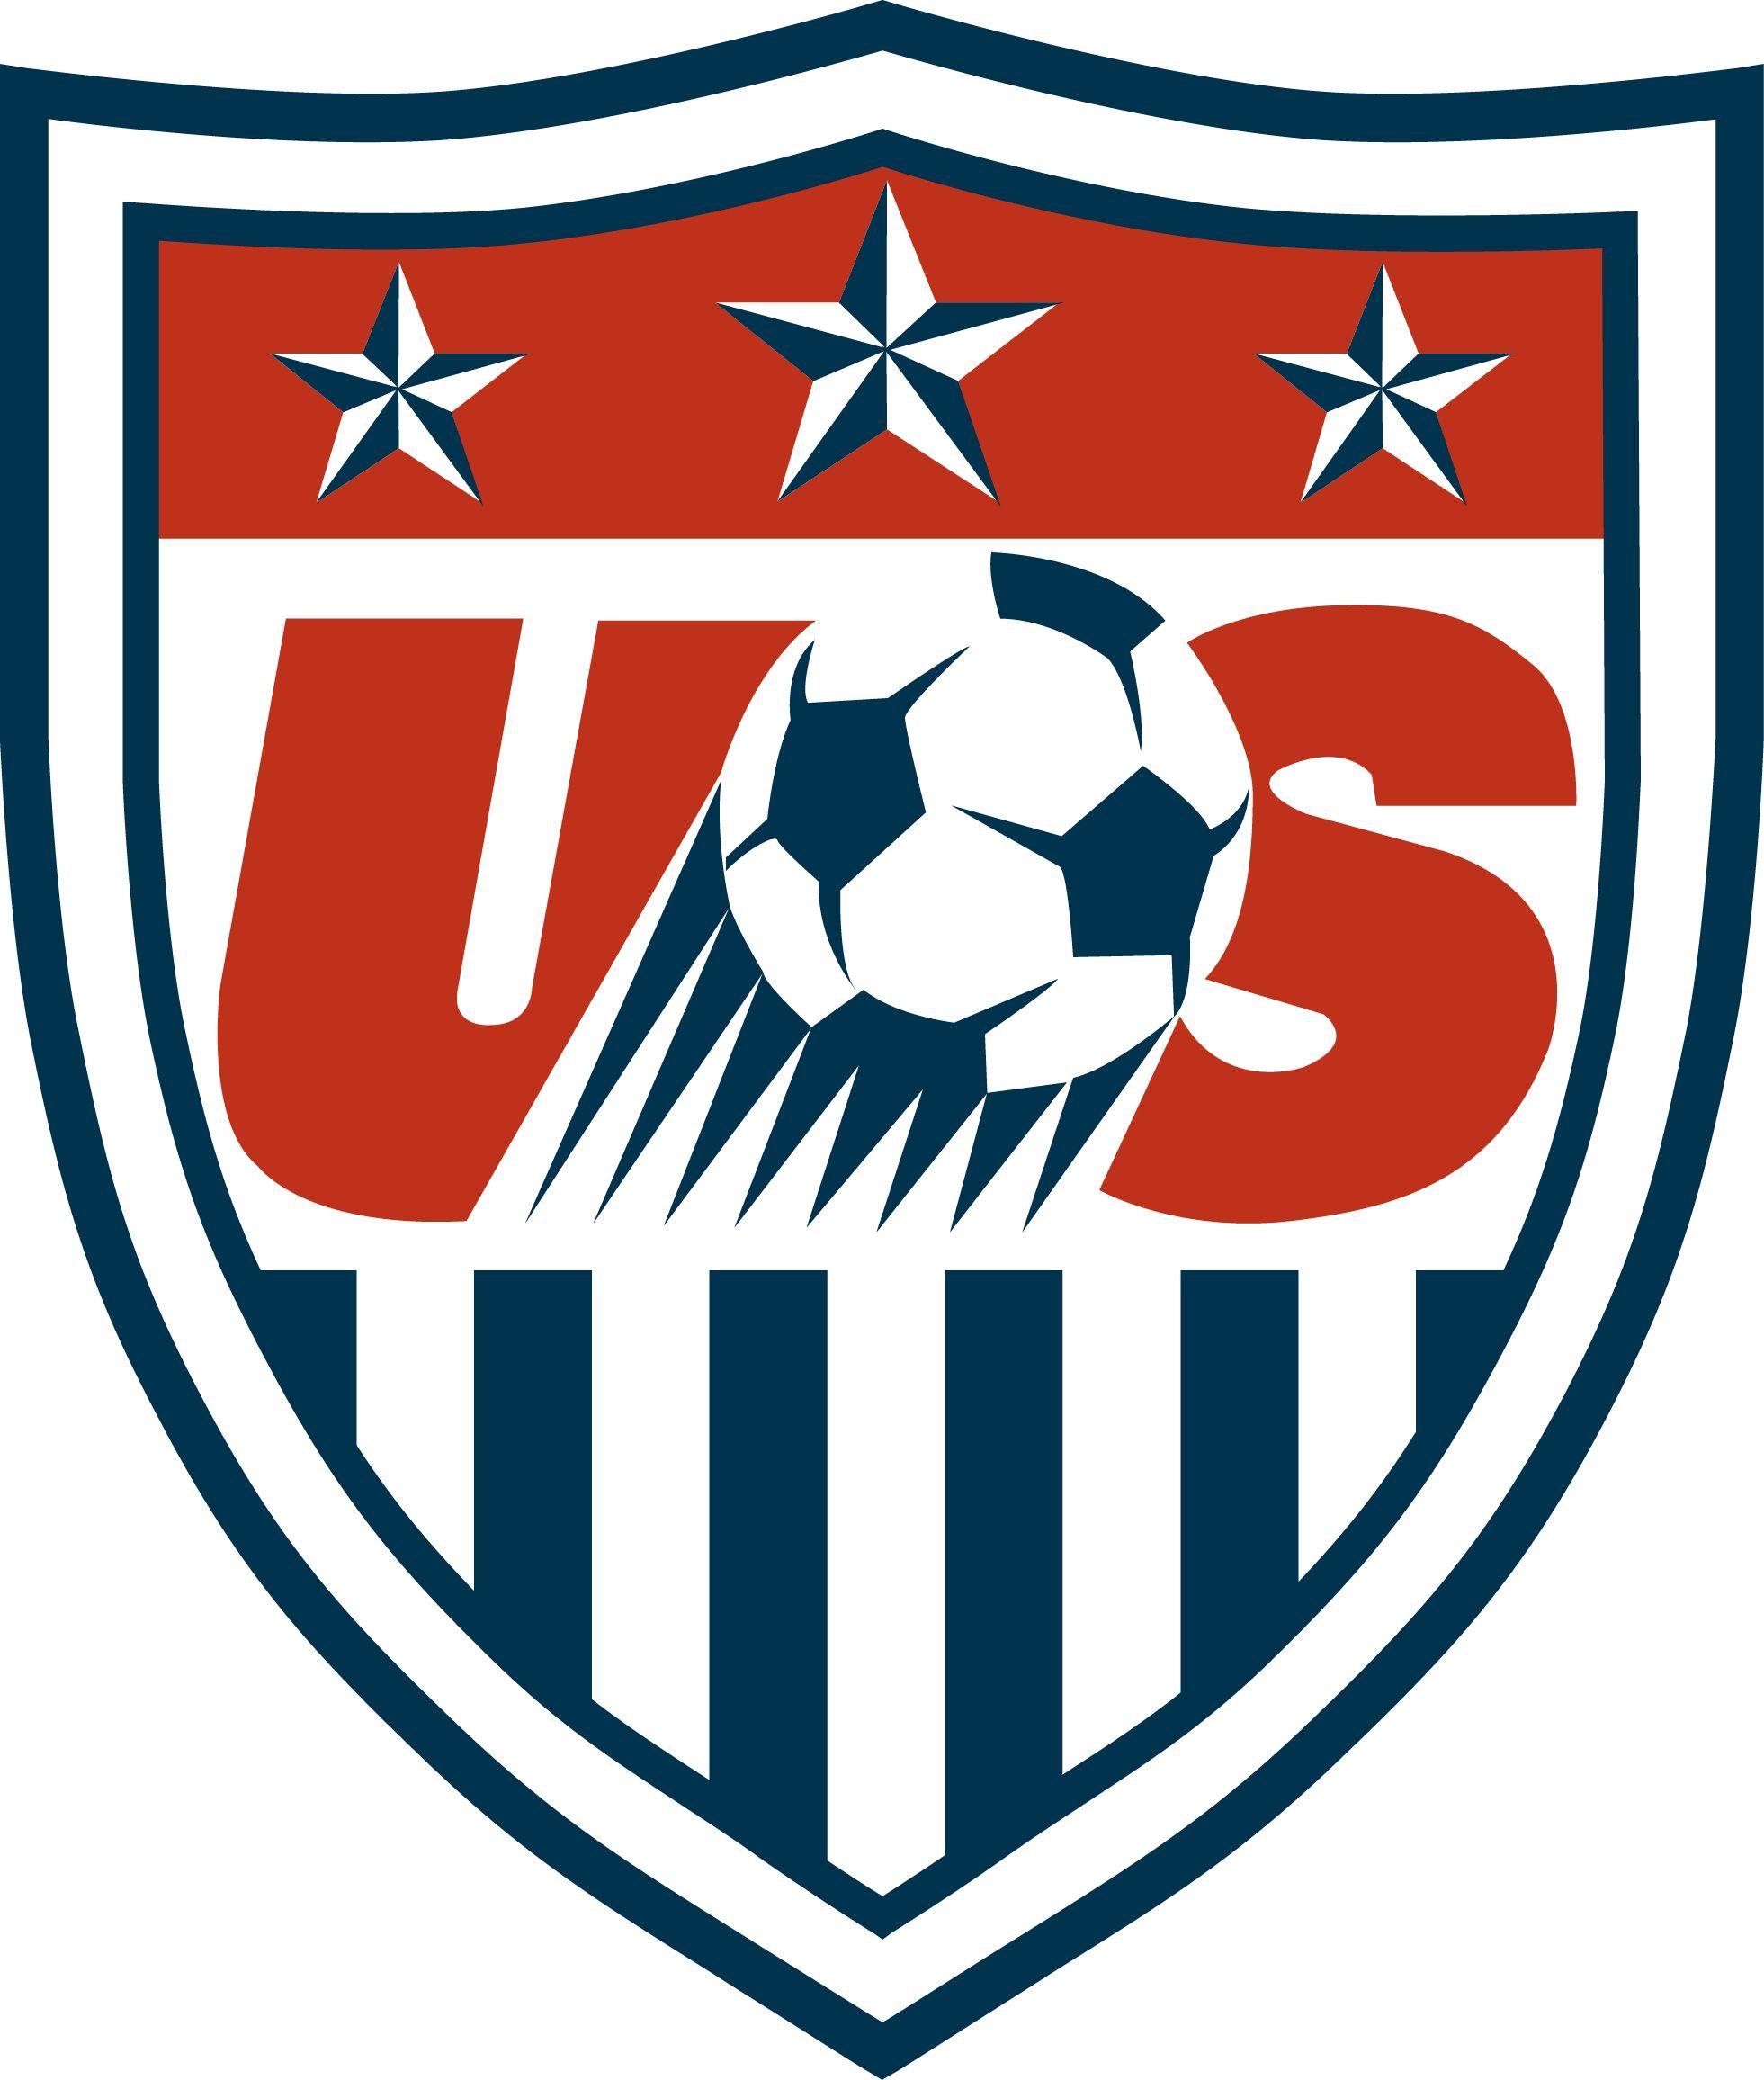 Soccer Team Logo - United States Soccer Federation & United States National Soccer Team ...